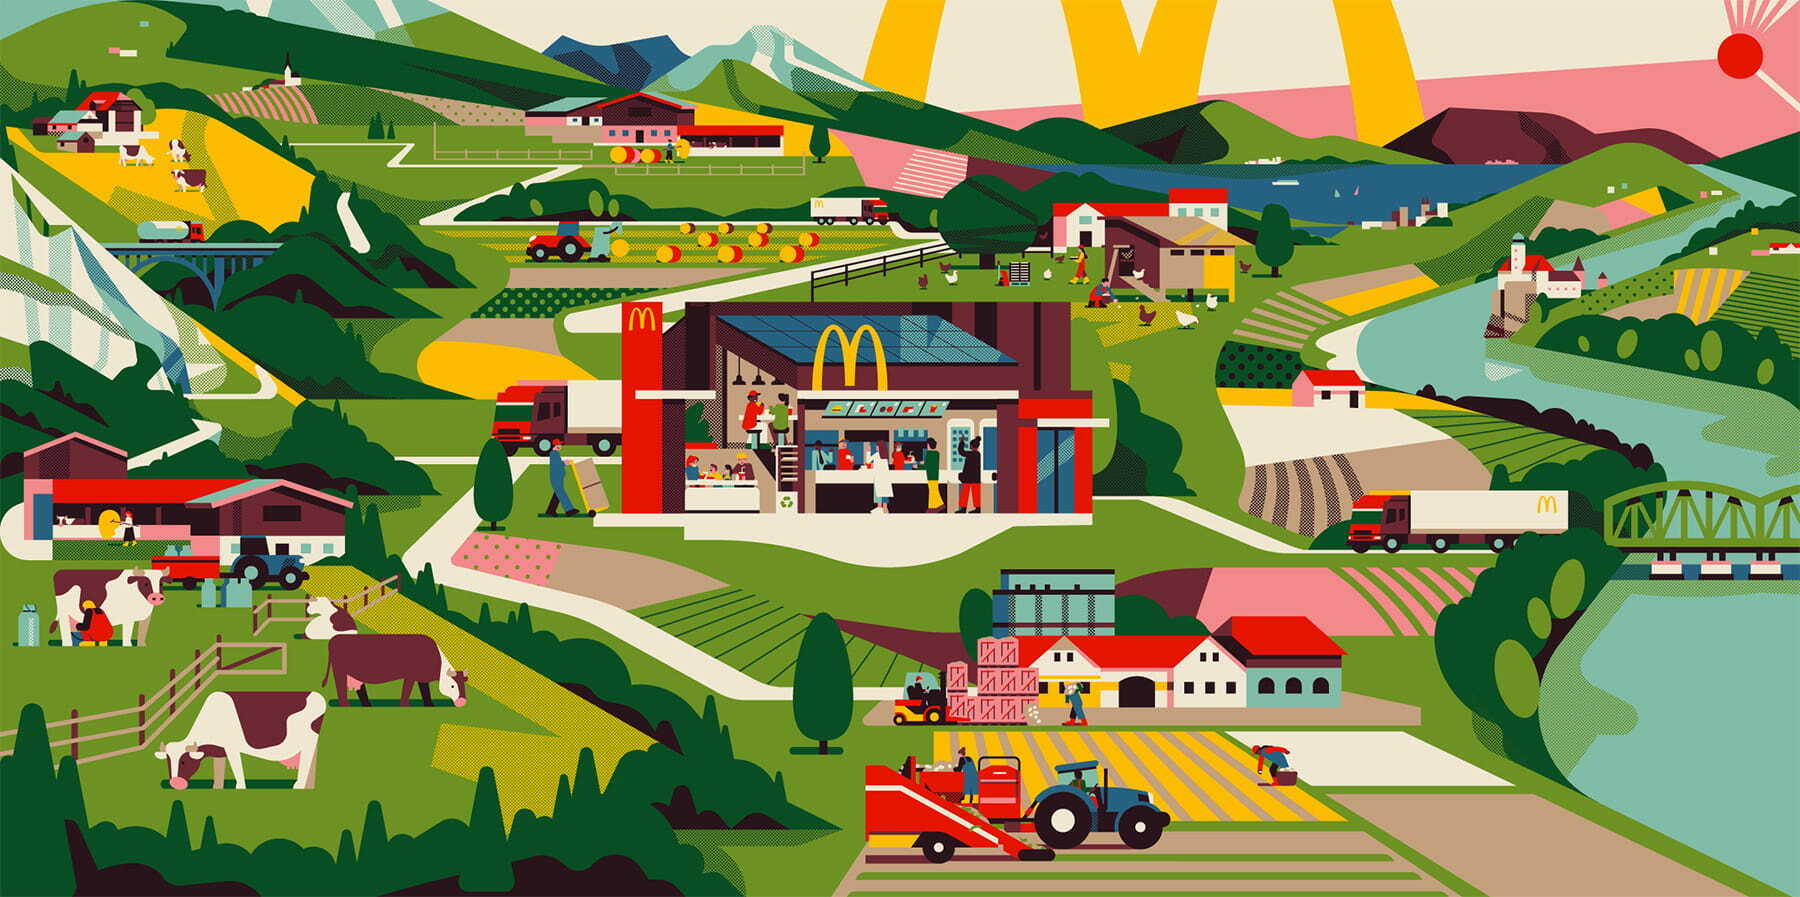 McDonalds Austria